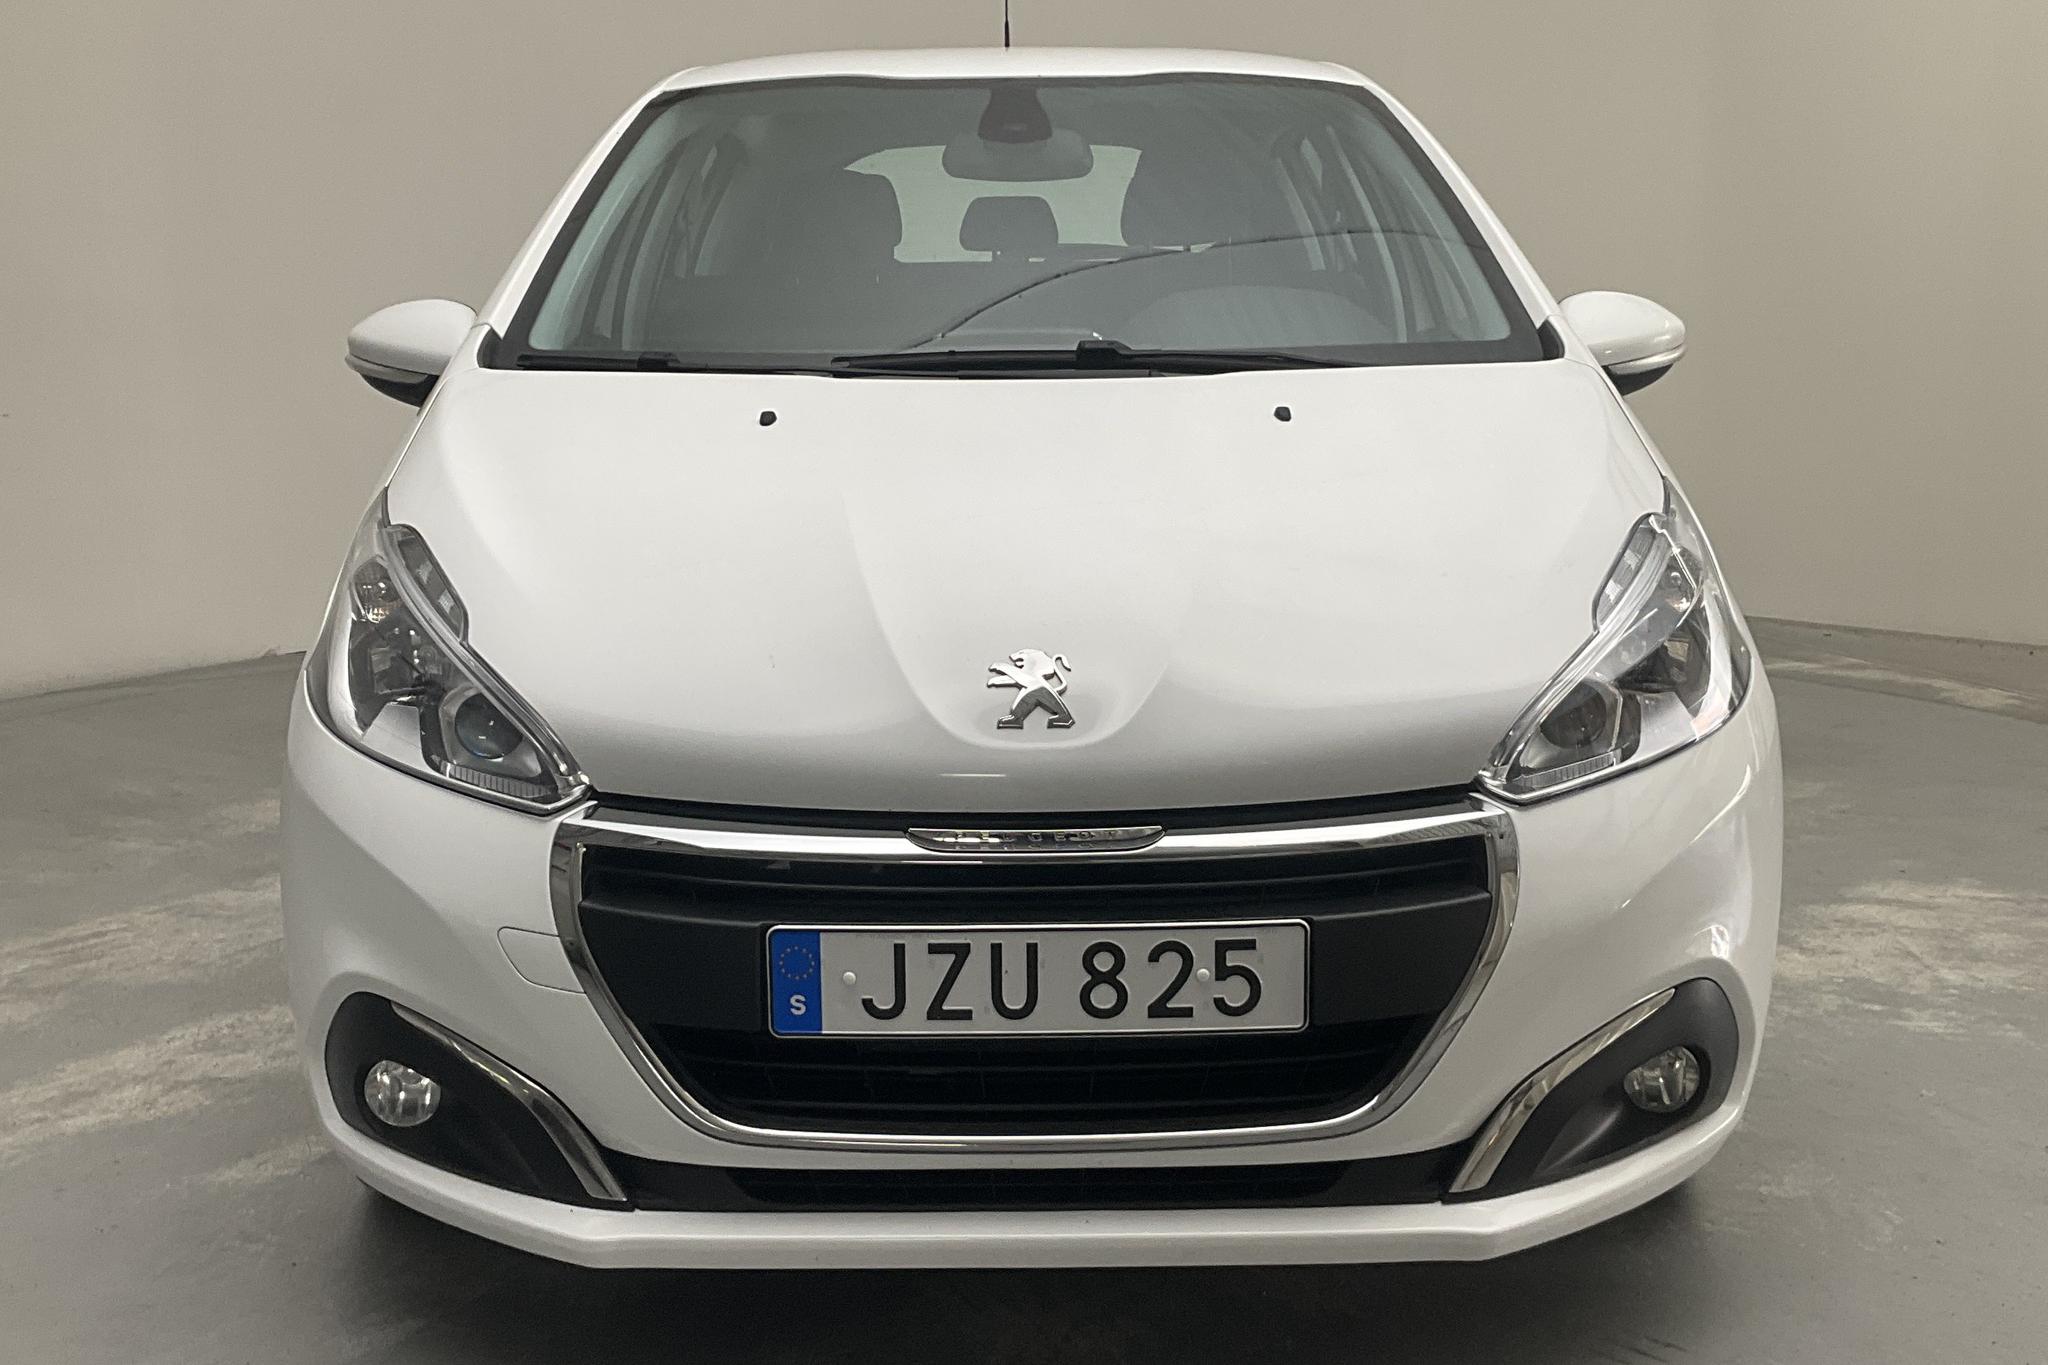 Peugeot 208 PureTech 5dr (82hk) - 12 019 mil - Manuell - vit - 2016